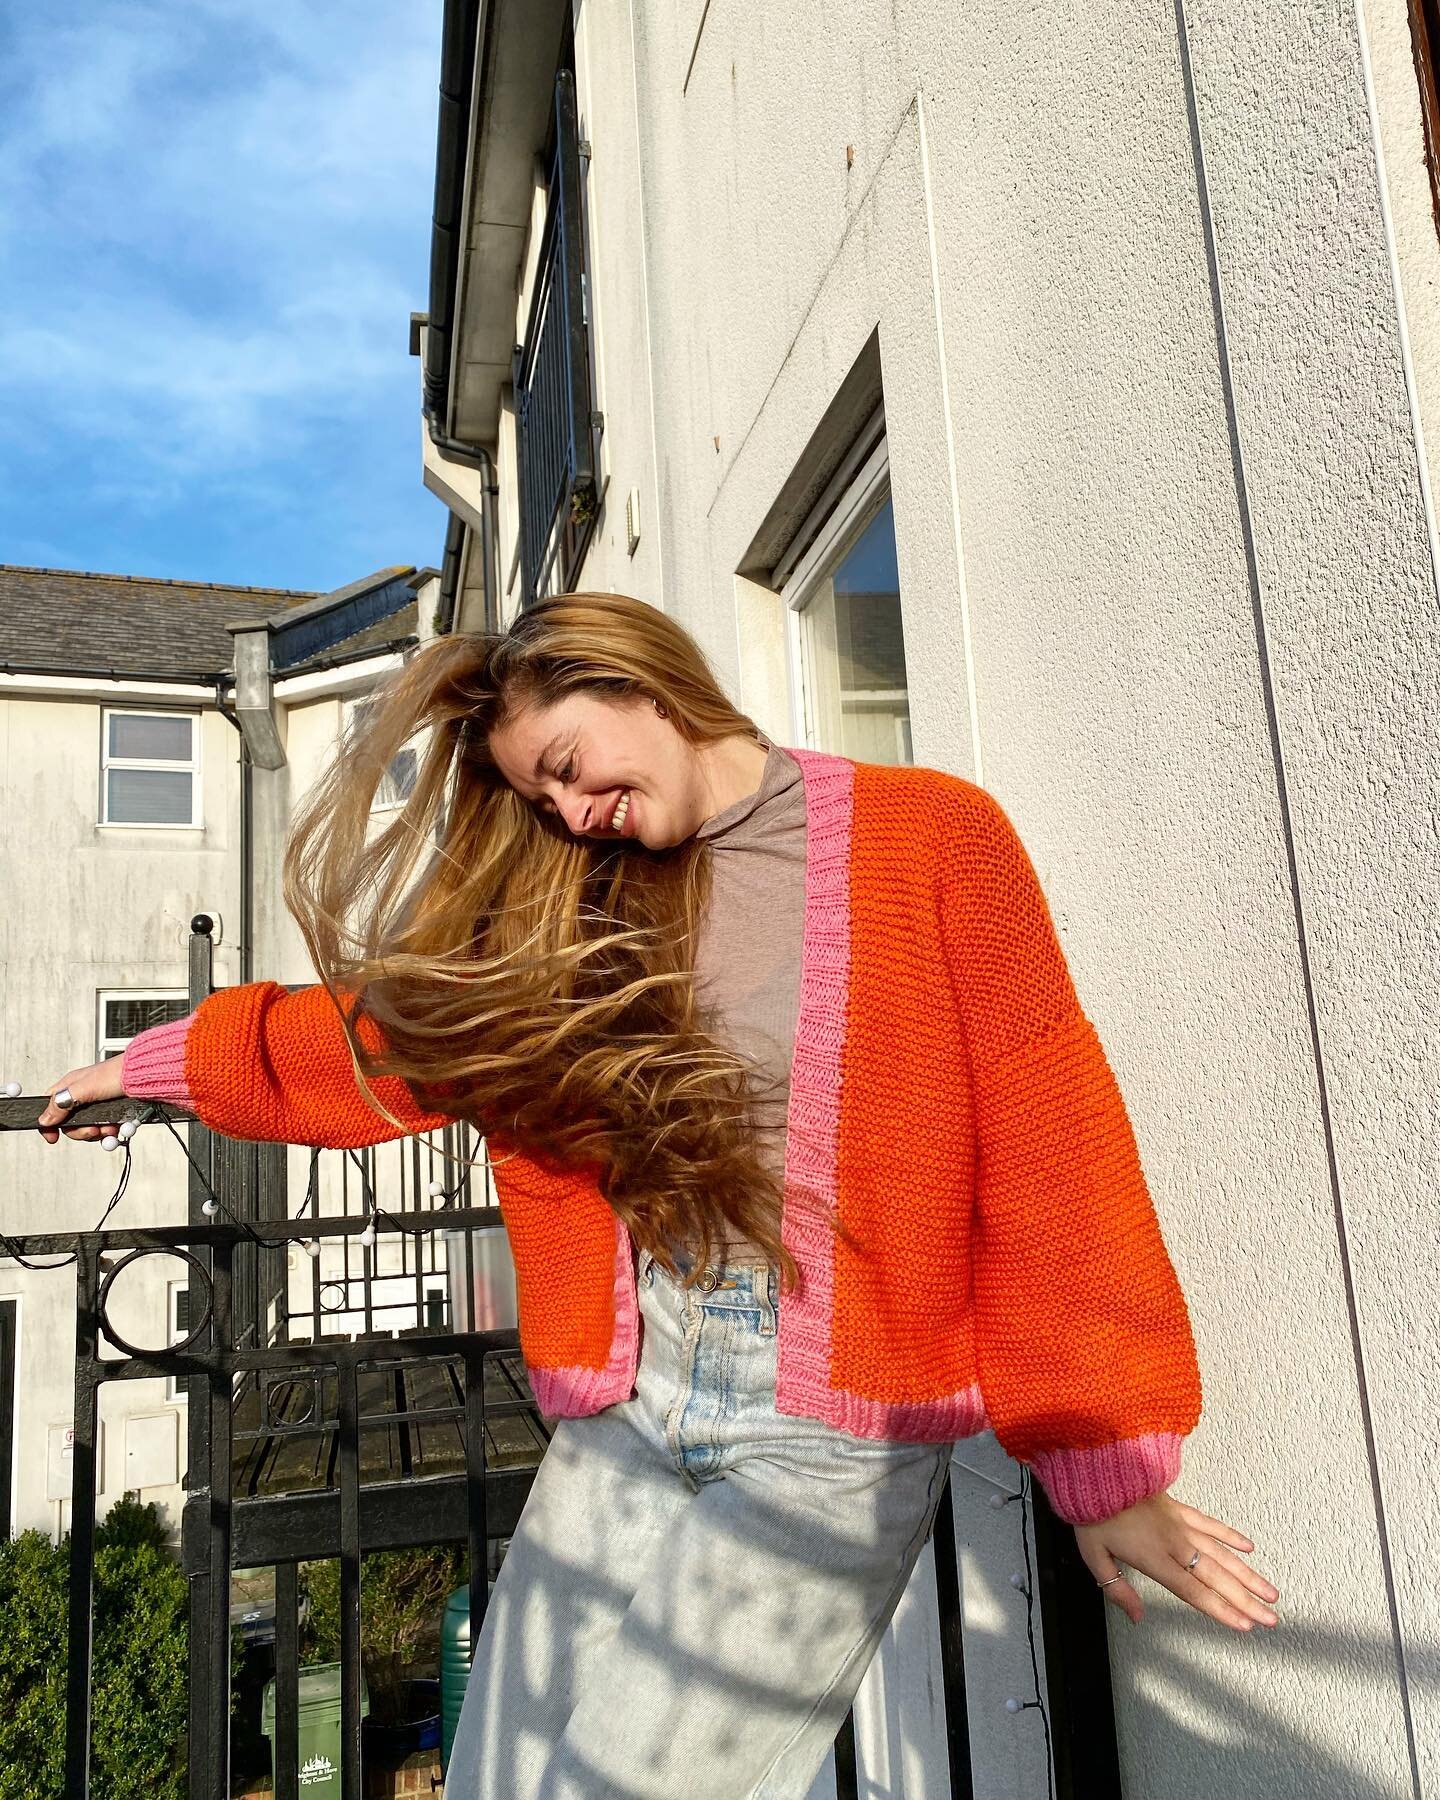 Grateful 🍊

#grateful #energy #knit #knittwear #orange 

🍊 made by @harriethill23 
📸 by @rofirbank